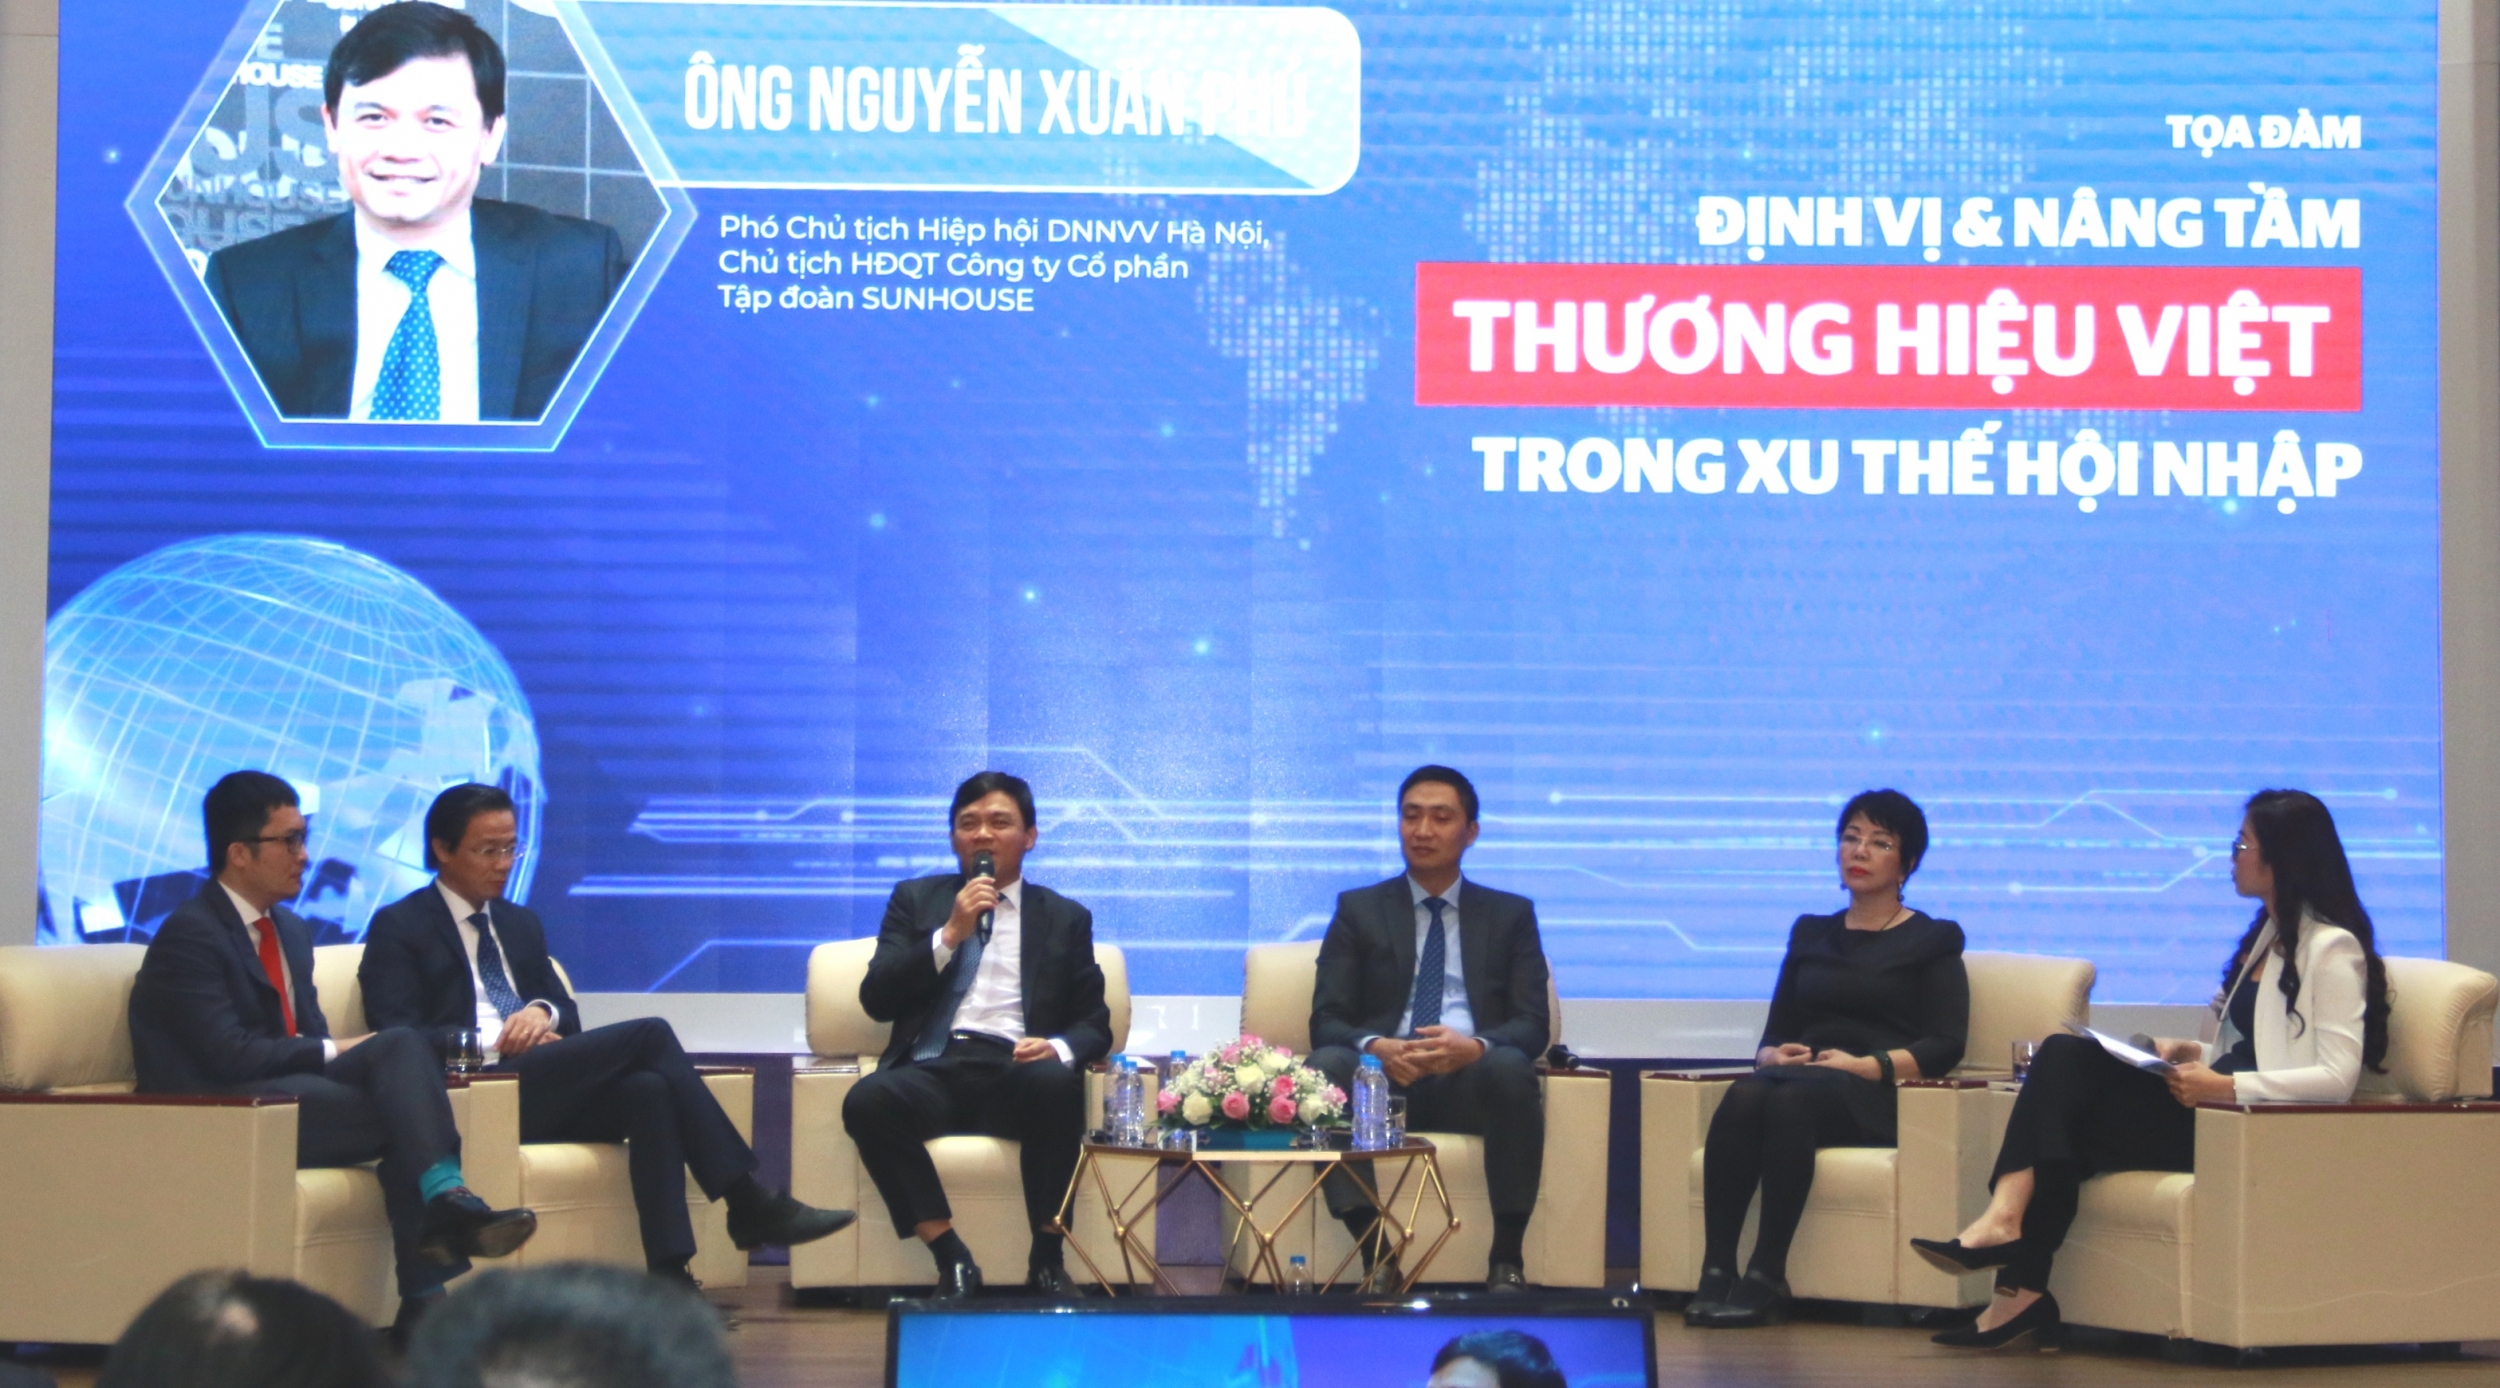 Định vị và nâng tầm thương hiệu Việt trong xu thế hội nhập